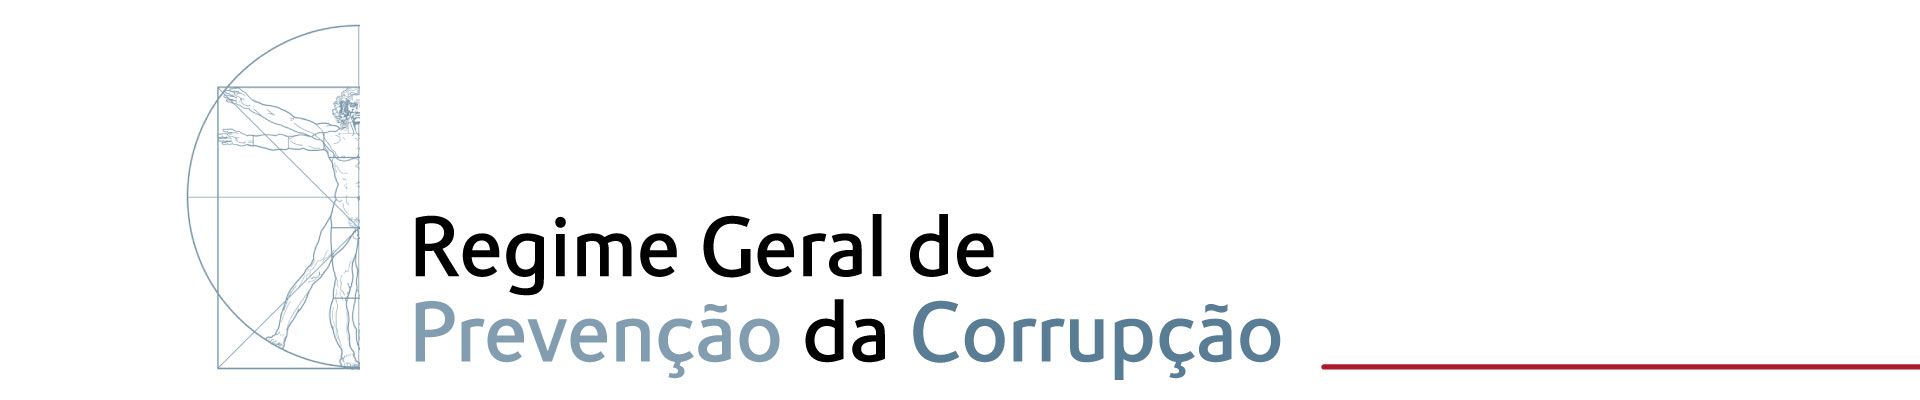 Banner - Regime Geral de Prevenção da Corrupção